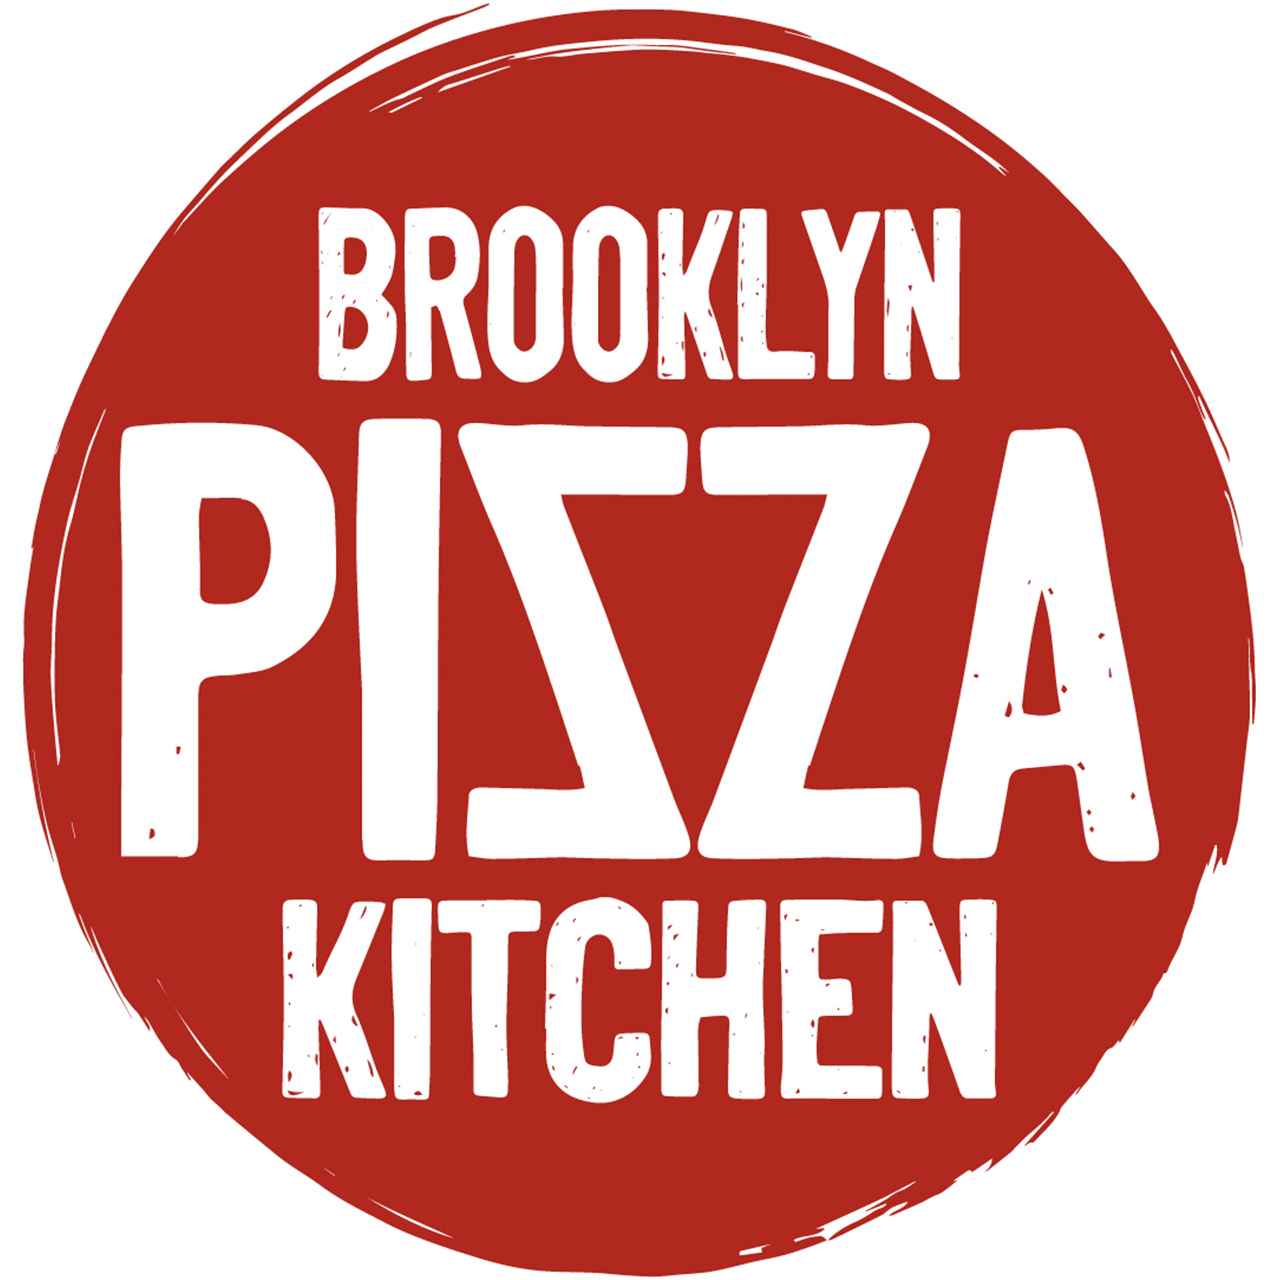 Brooklyn Pizza Kitchen logo